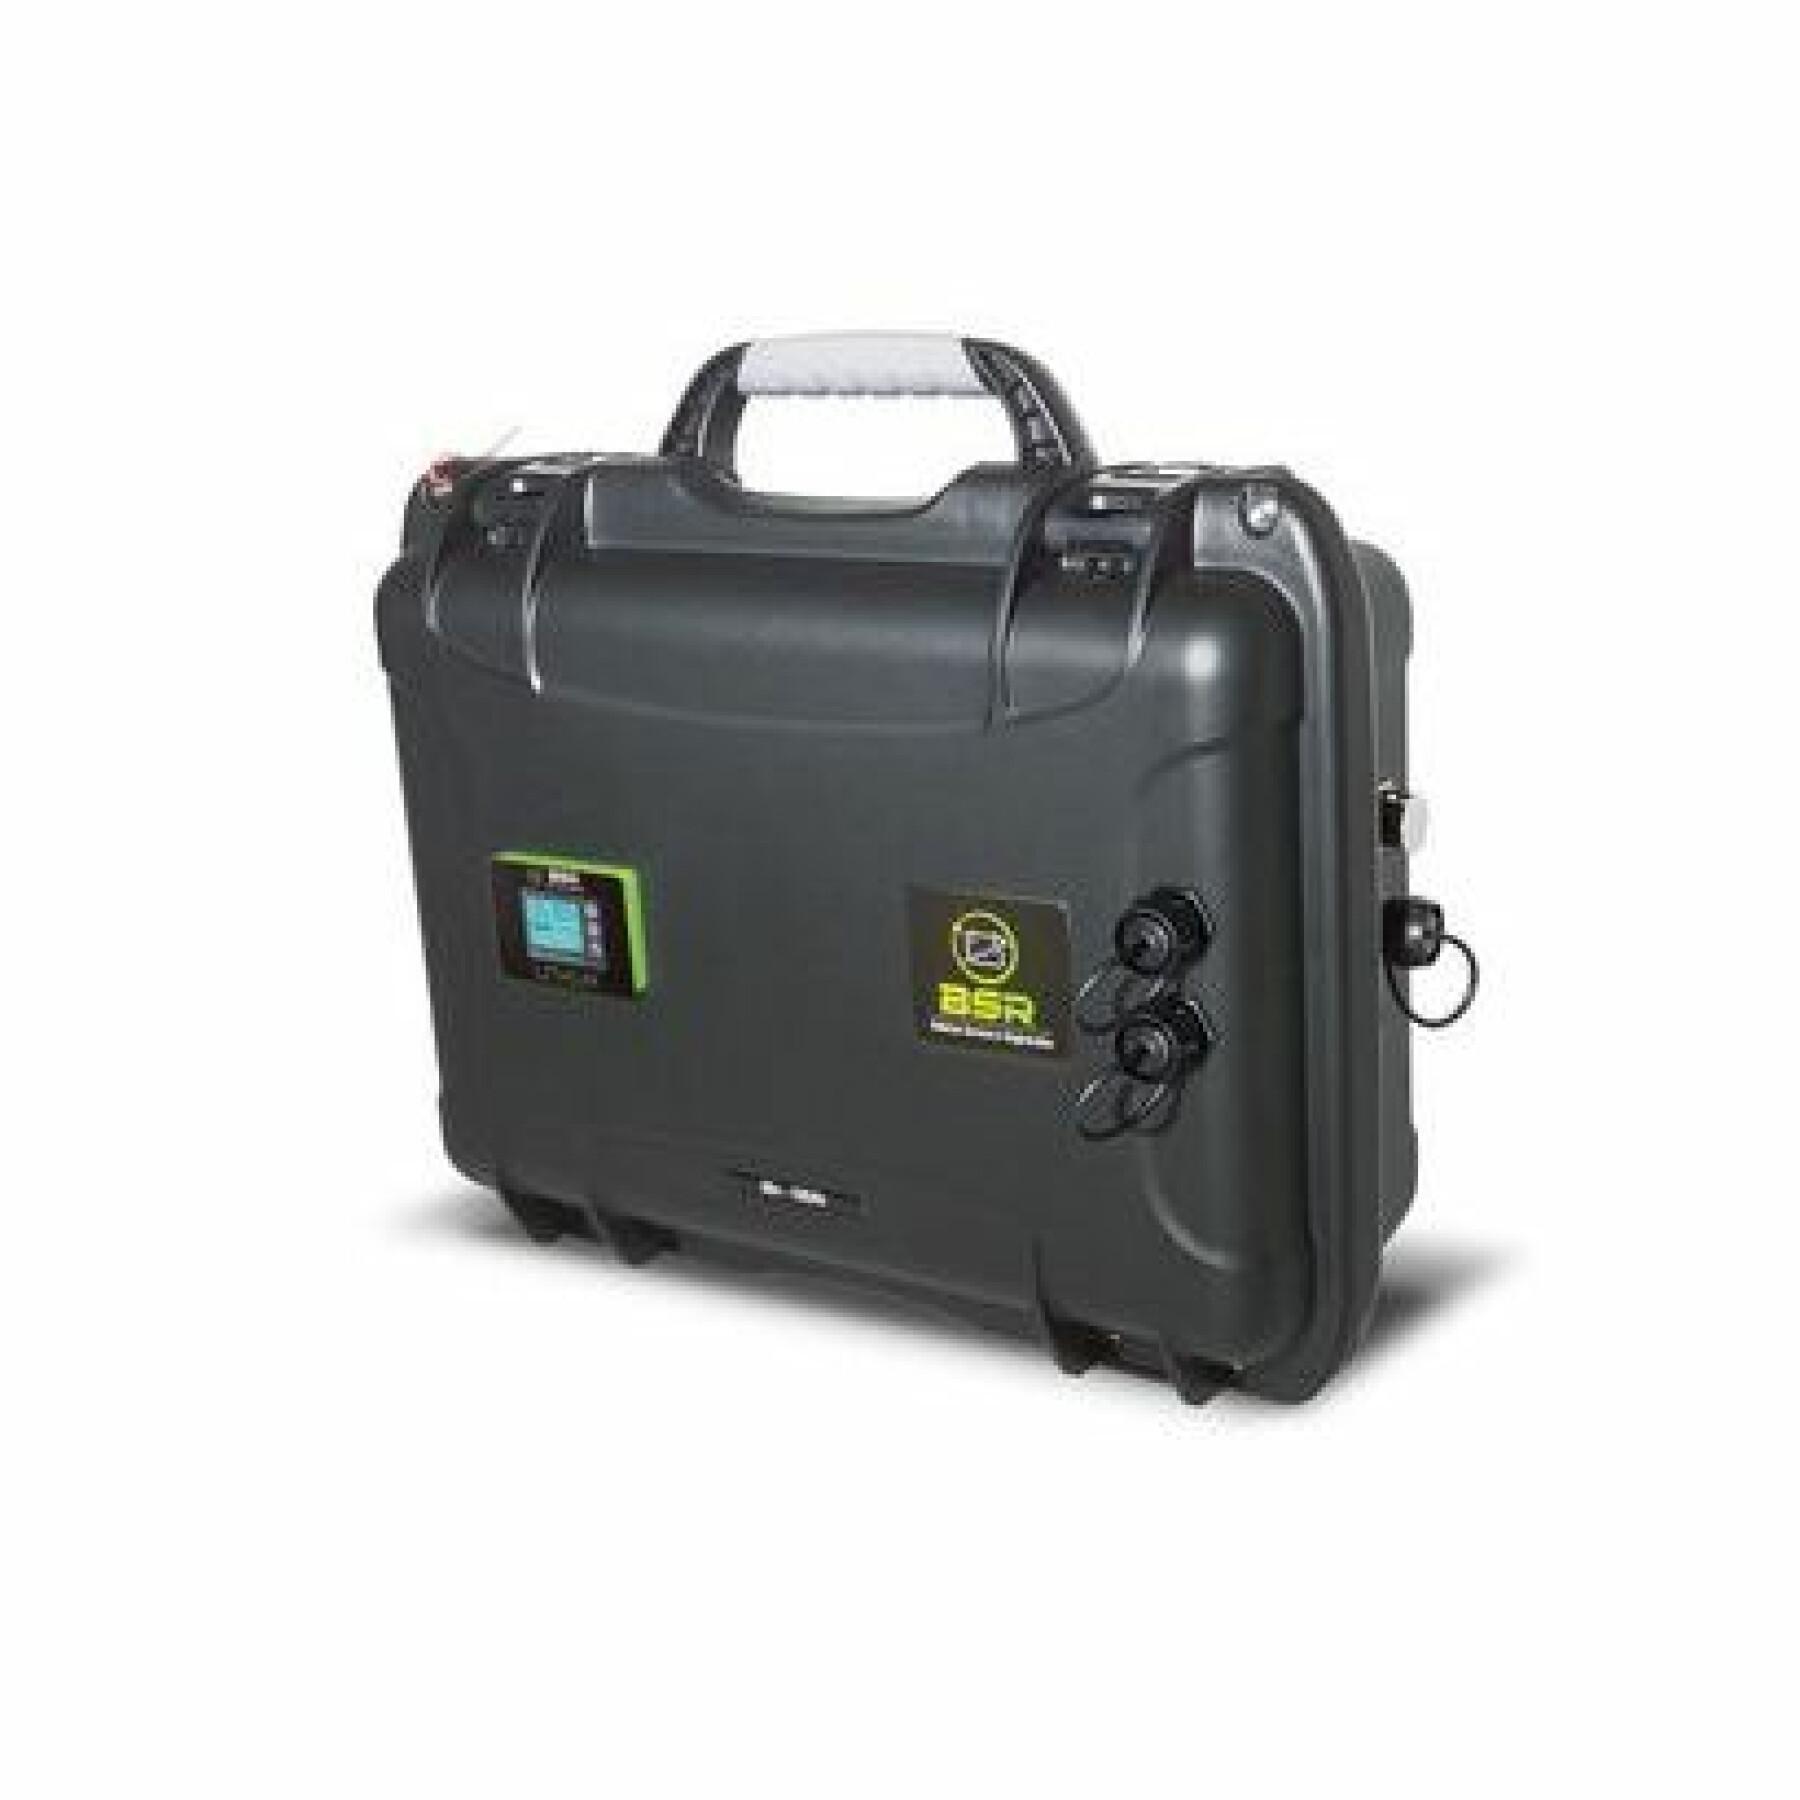 Lithium case + 2 sounder outputs BSR LifePo4 Gen2 36 V 100 Ah +2